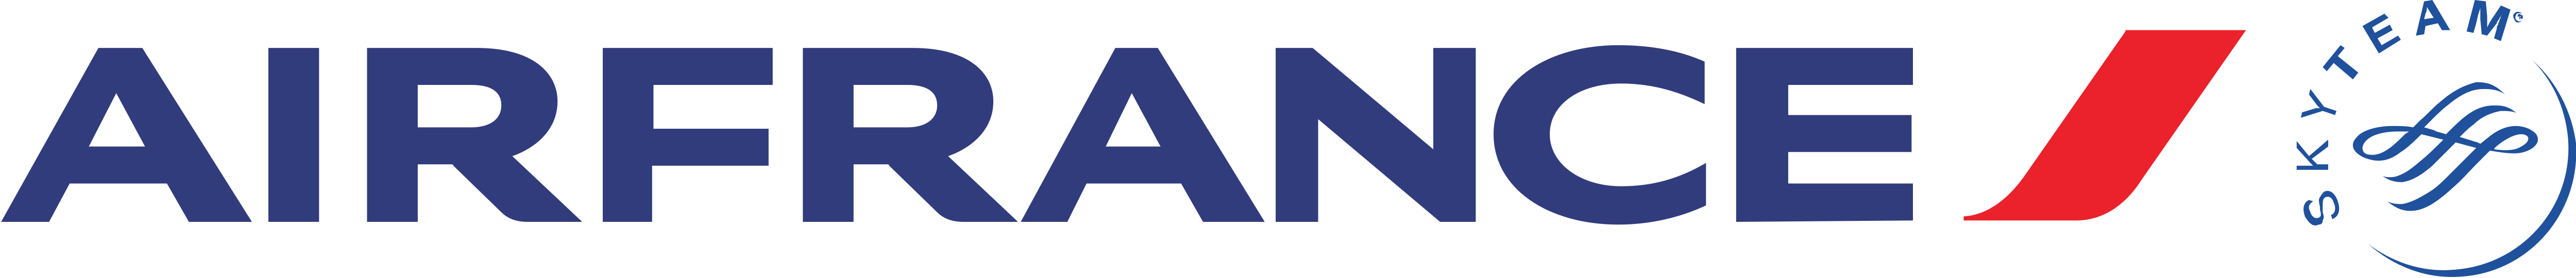 Air_France_logo